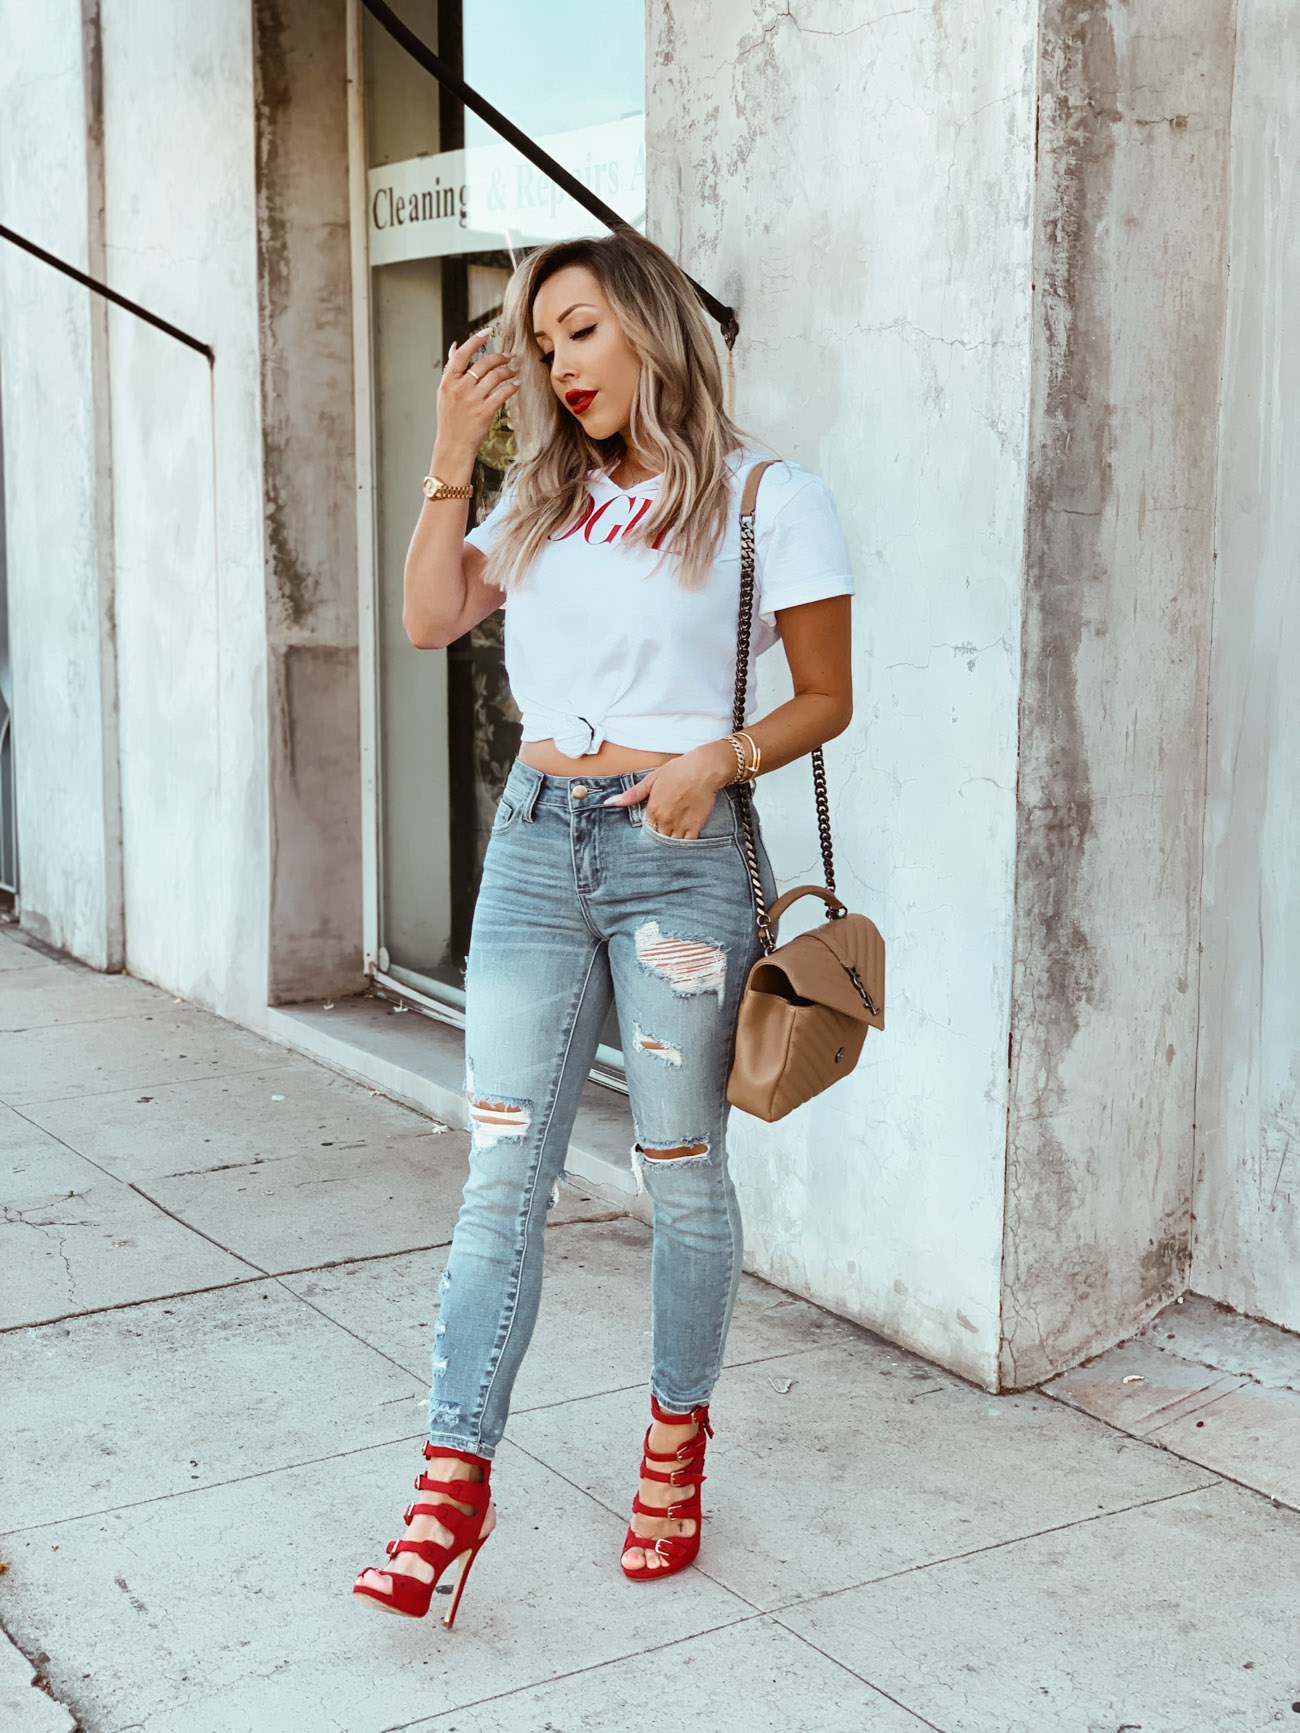 Vogue Tee | Ripped Denim | Red Heels | Street Style in LA | Blondie in the City by Hayley Larue